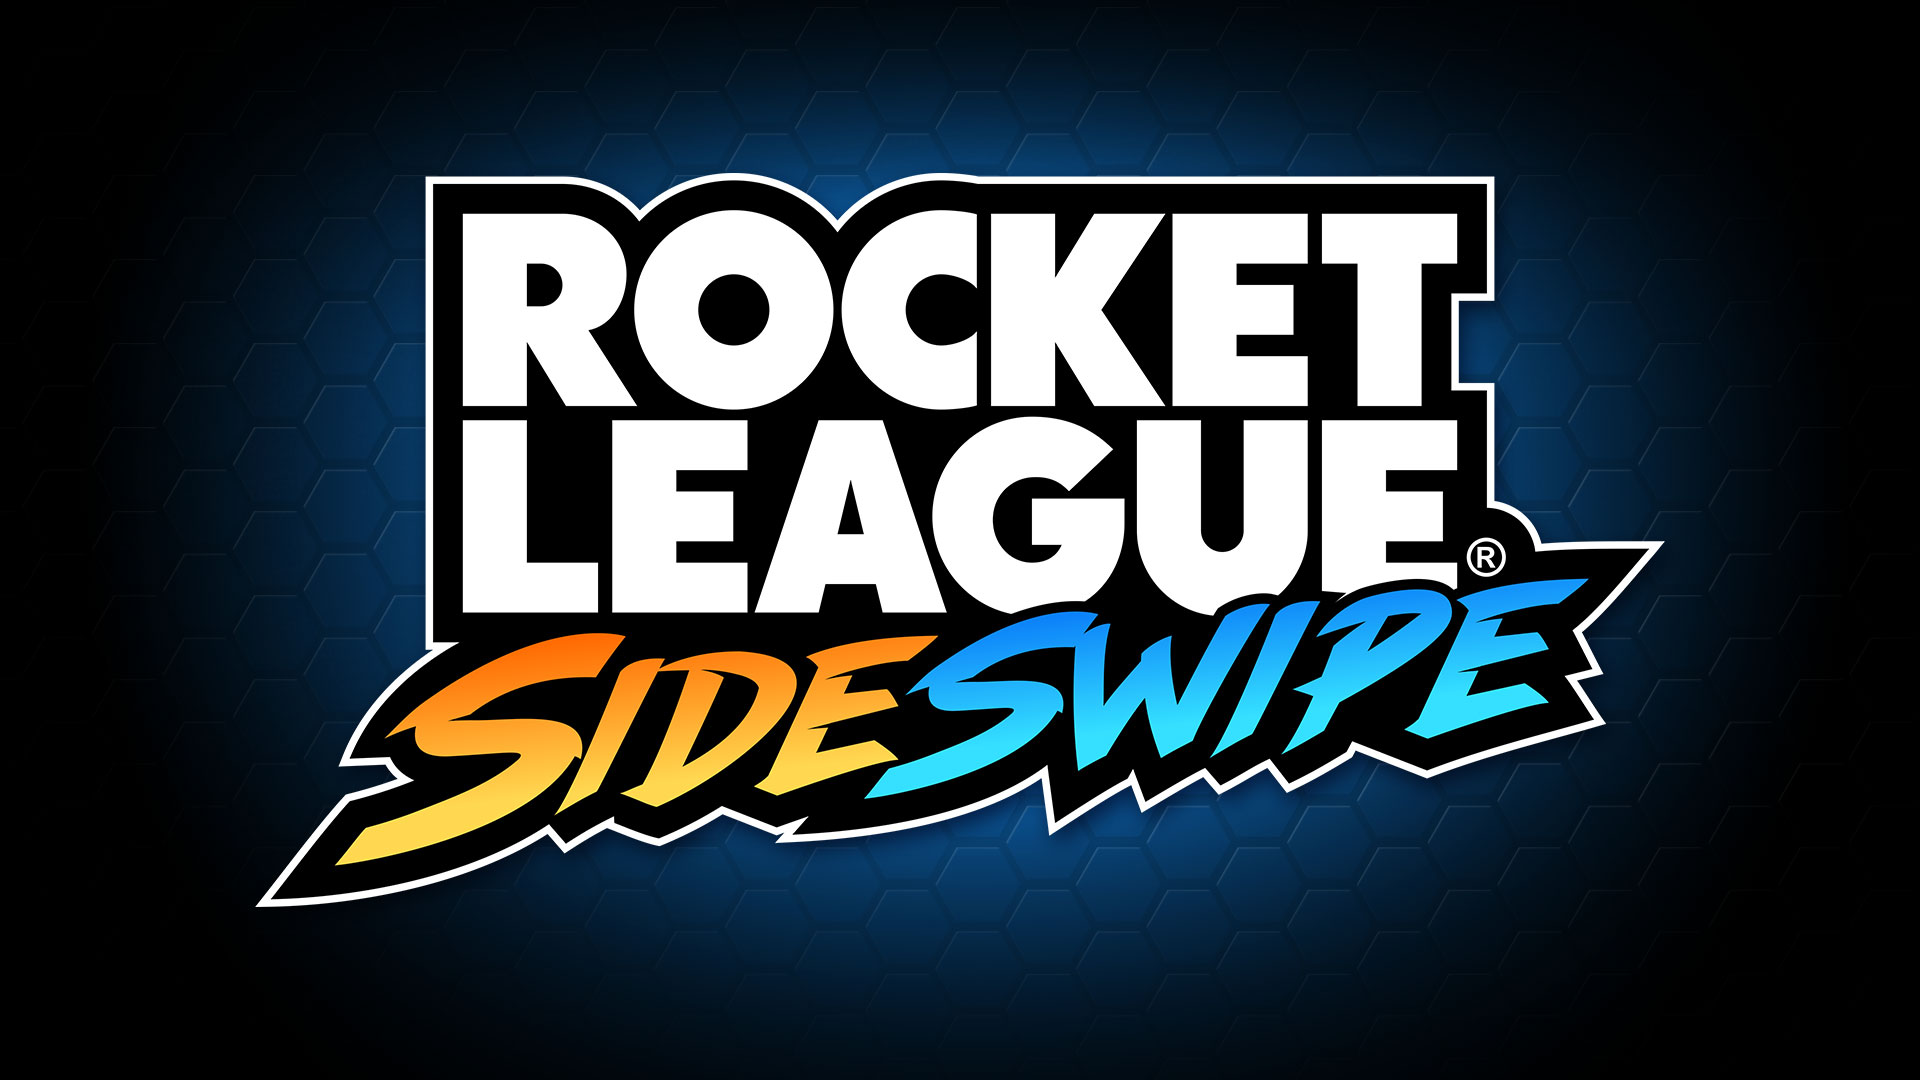 Rocket League Sideswipe : la version mobile de Rocket League annoncée !